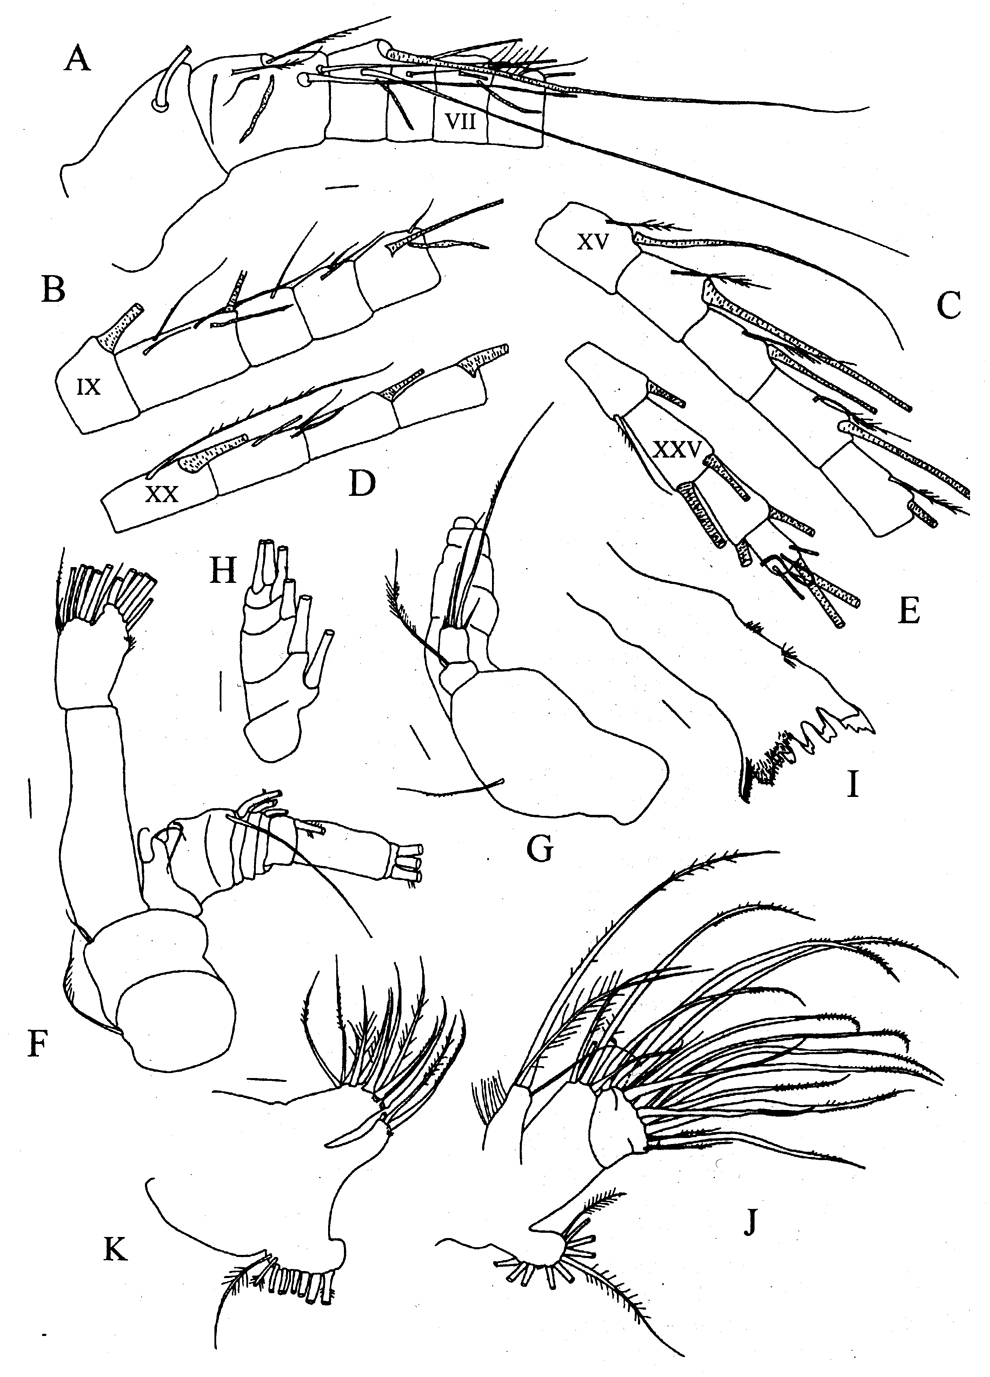 Species Pseudeuchaeta acuticornis - Plate 2 of morphological figures